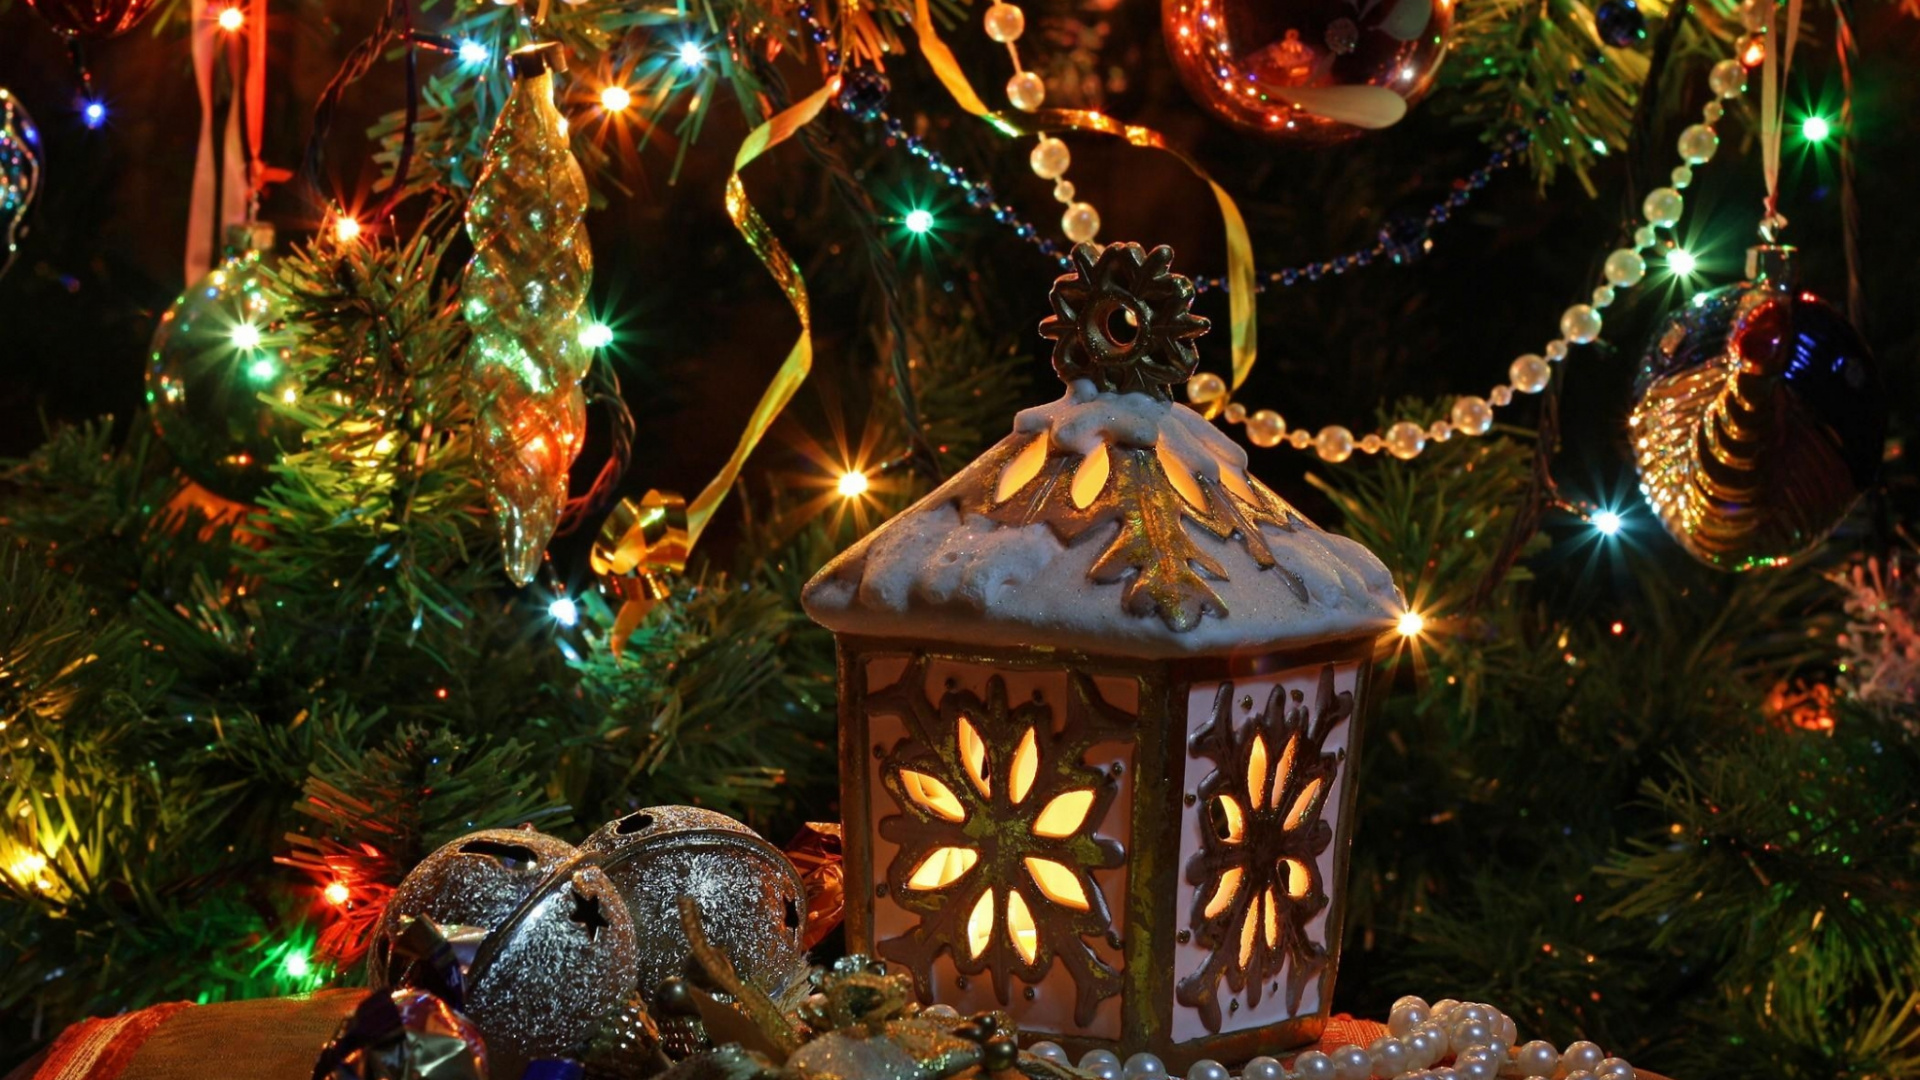 圣诞彩灯, 圣诞装饰, 圣诞树, 新的一年, 圣诞节 壁纸 1920x1080 允许